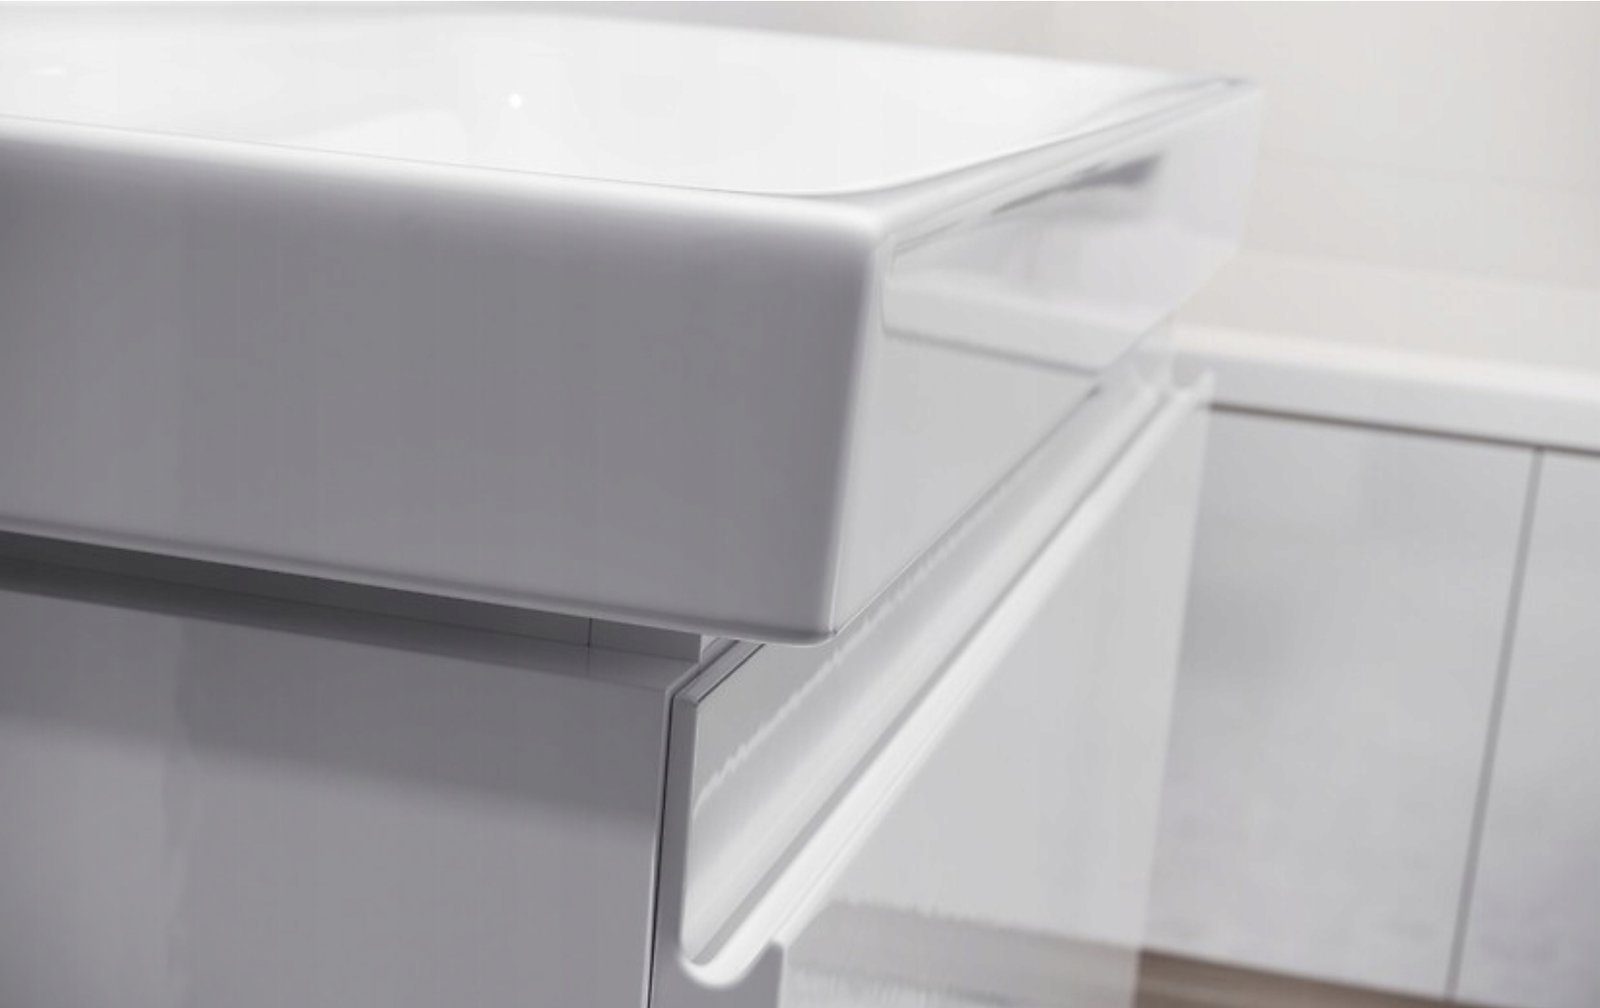 80 Badmöbel Schubladen MODUO & Badezimmerschrank KOLMAN Keramikwaschbecken mit Waschbeckenunterschrank SLIM Weiß Set